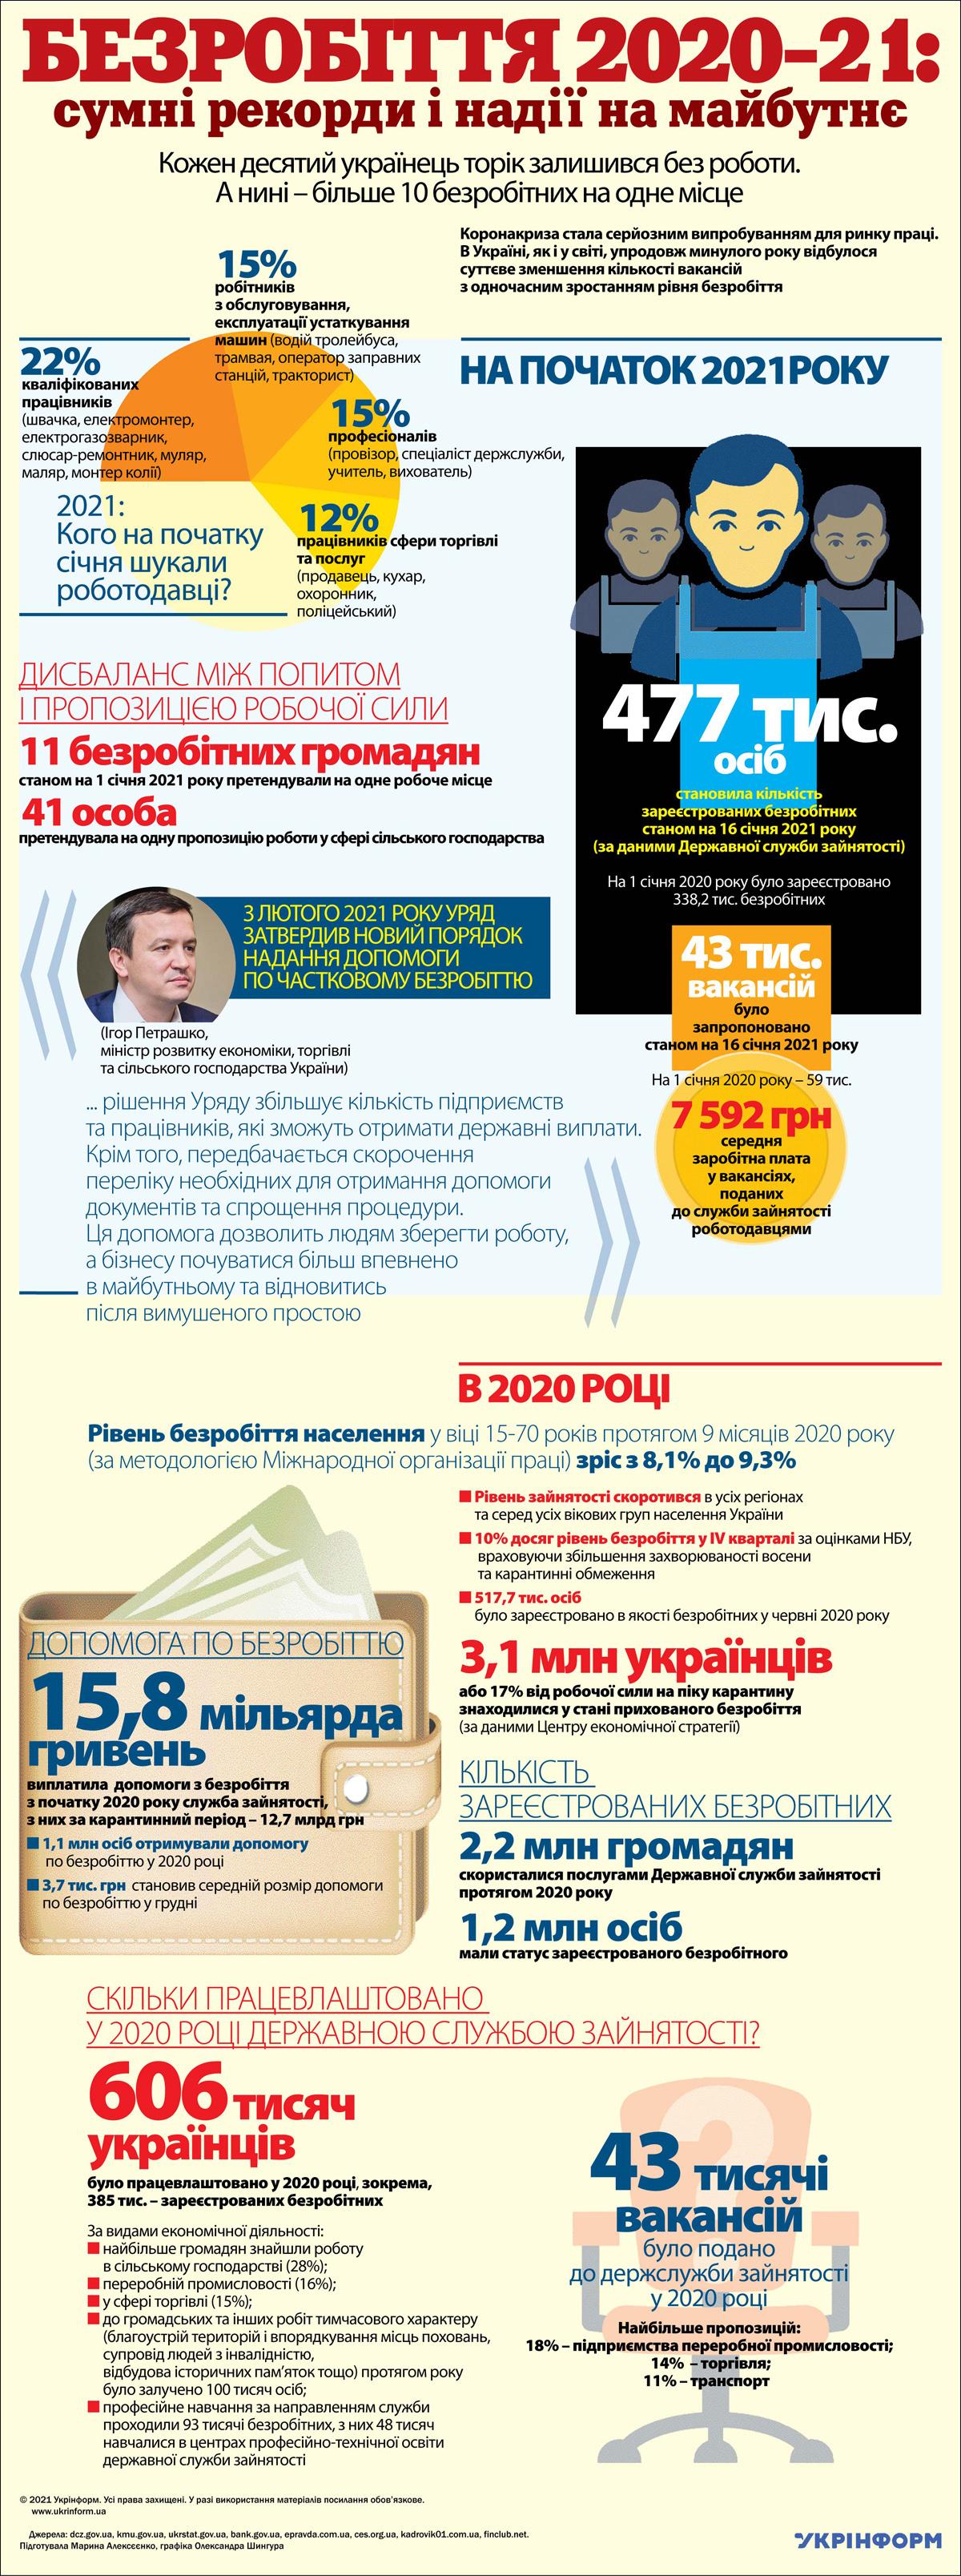 2020 рік: кожен десятий українець втратив роботу